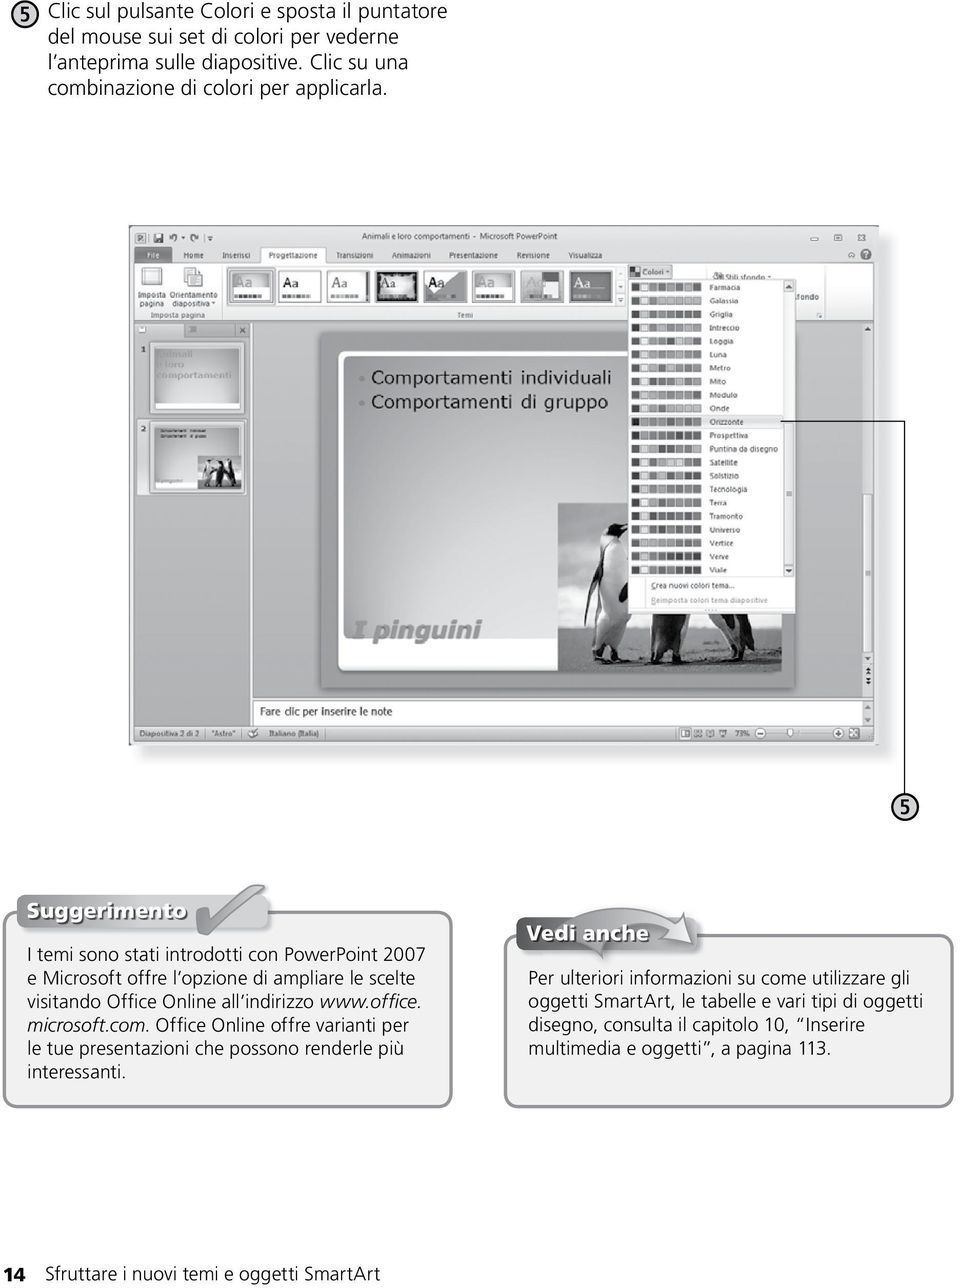 microsoft.com. Office Online offre varianti per le tue presentazioni che possono renderle più interessanti.